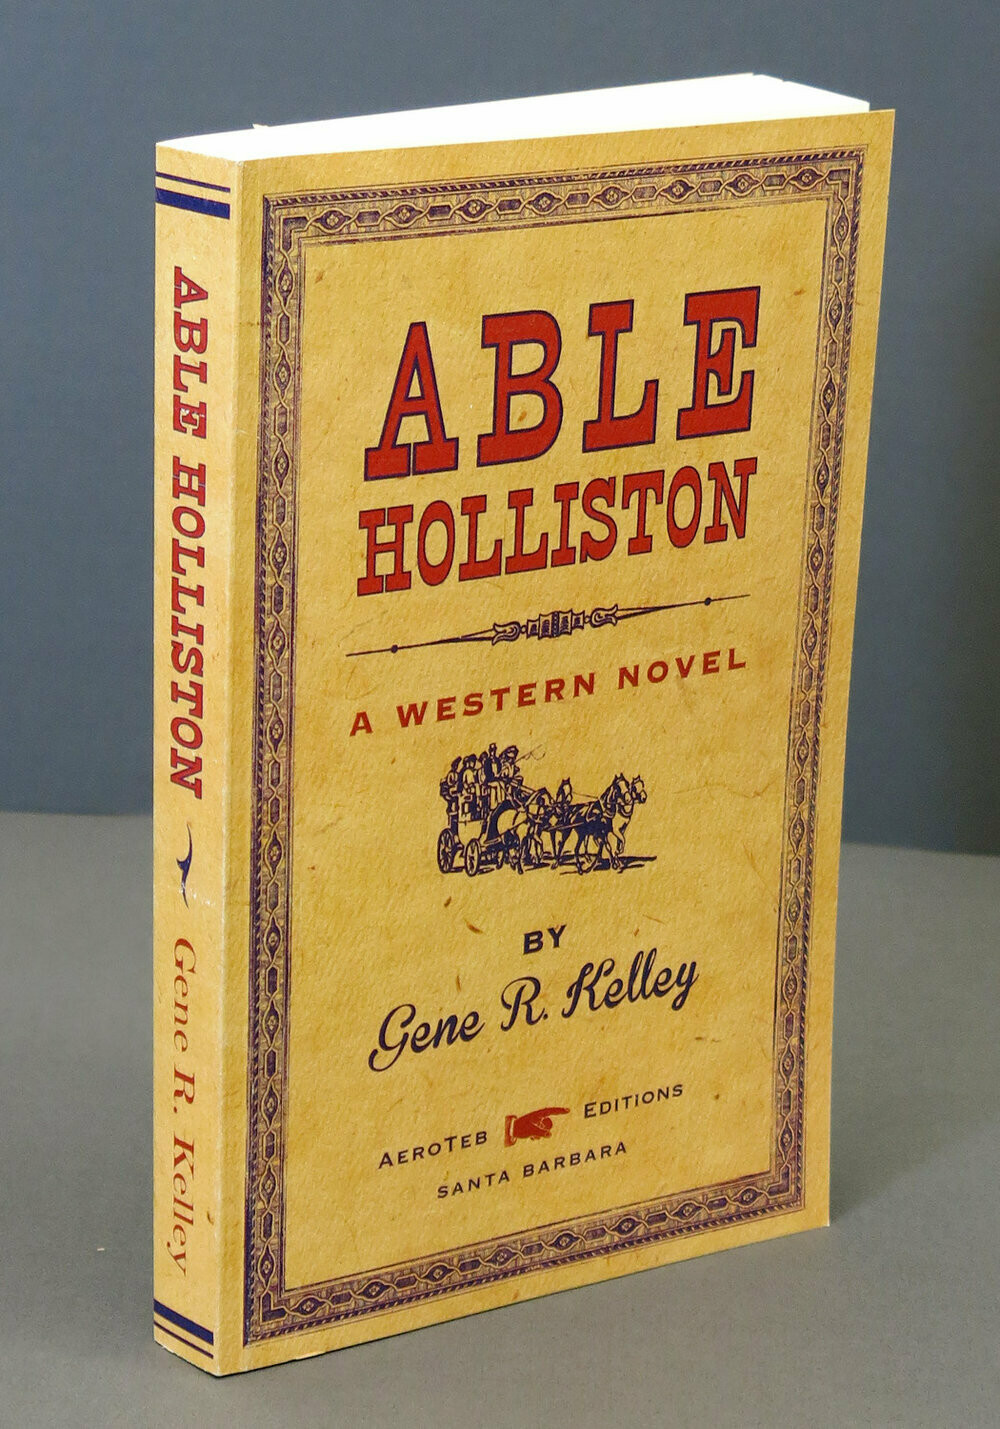 Able Holliston